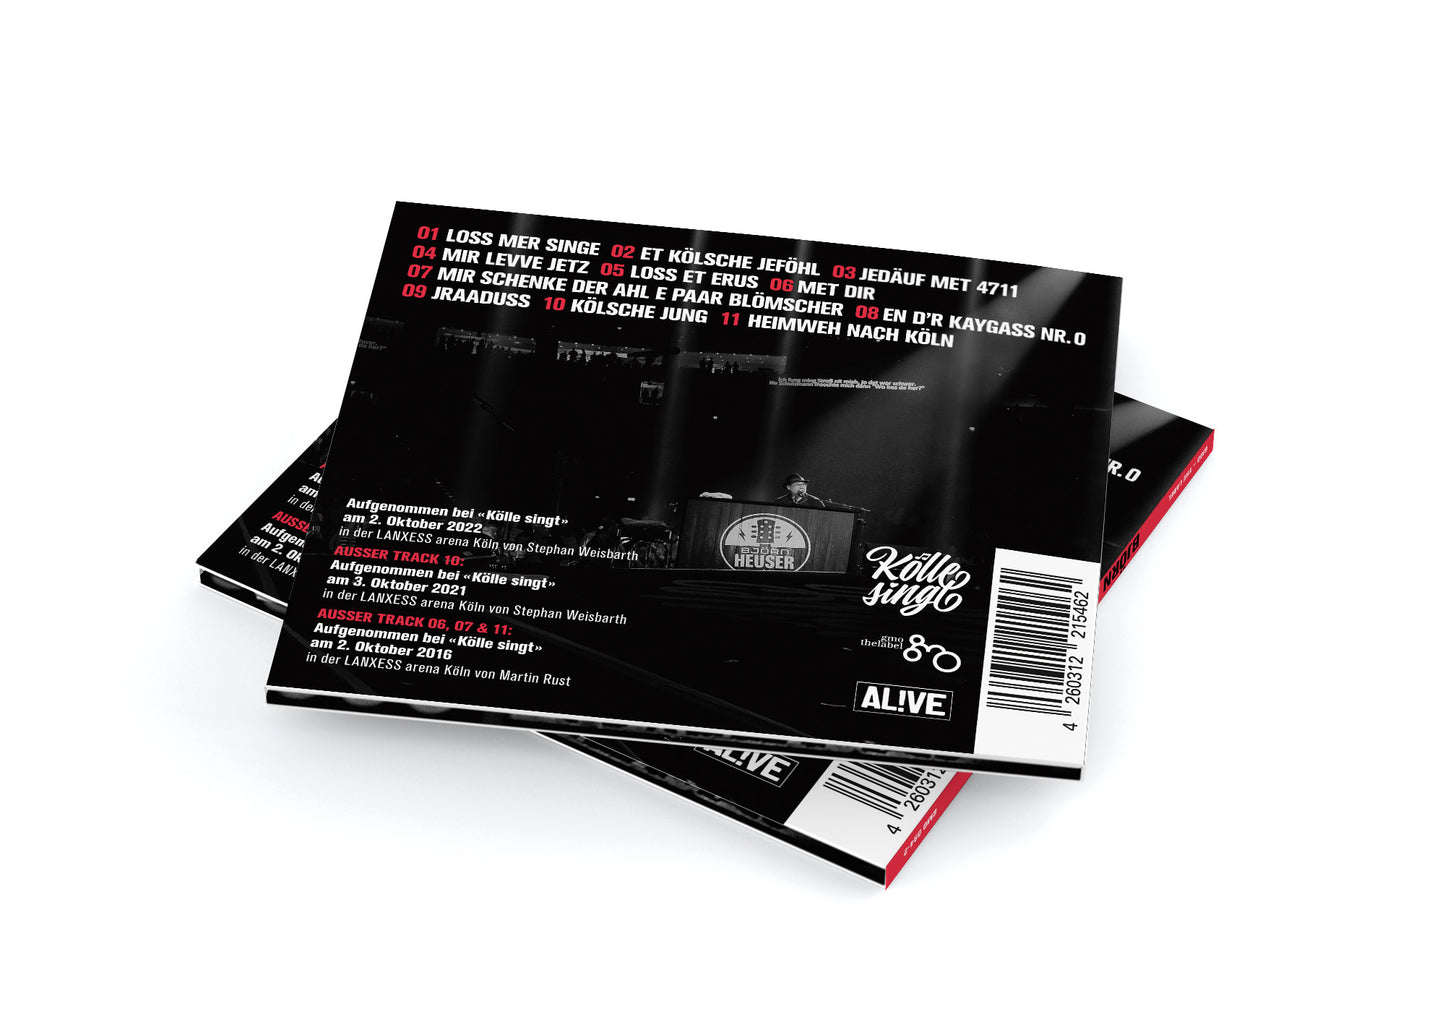 Björn Heuser - Arena Live (Digipack CD)